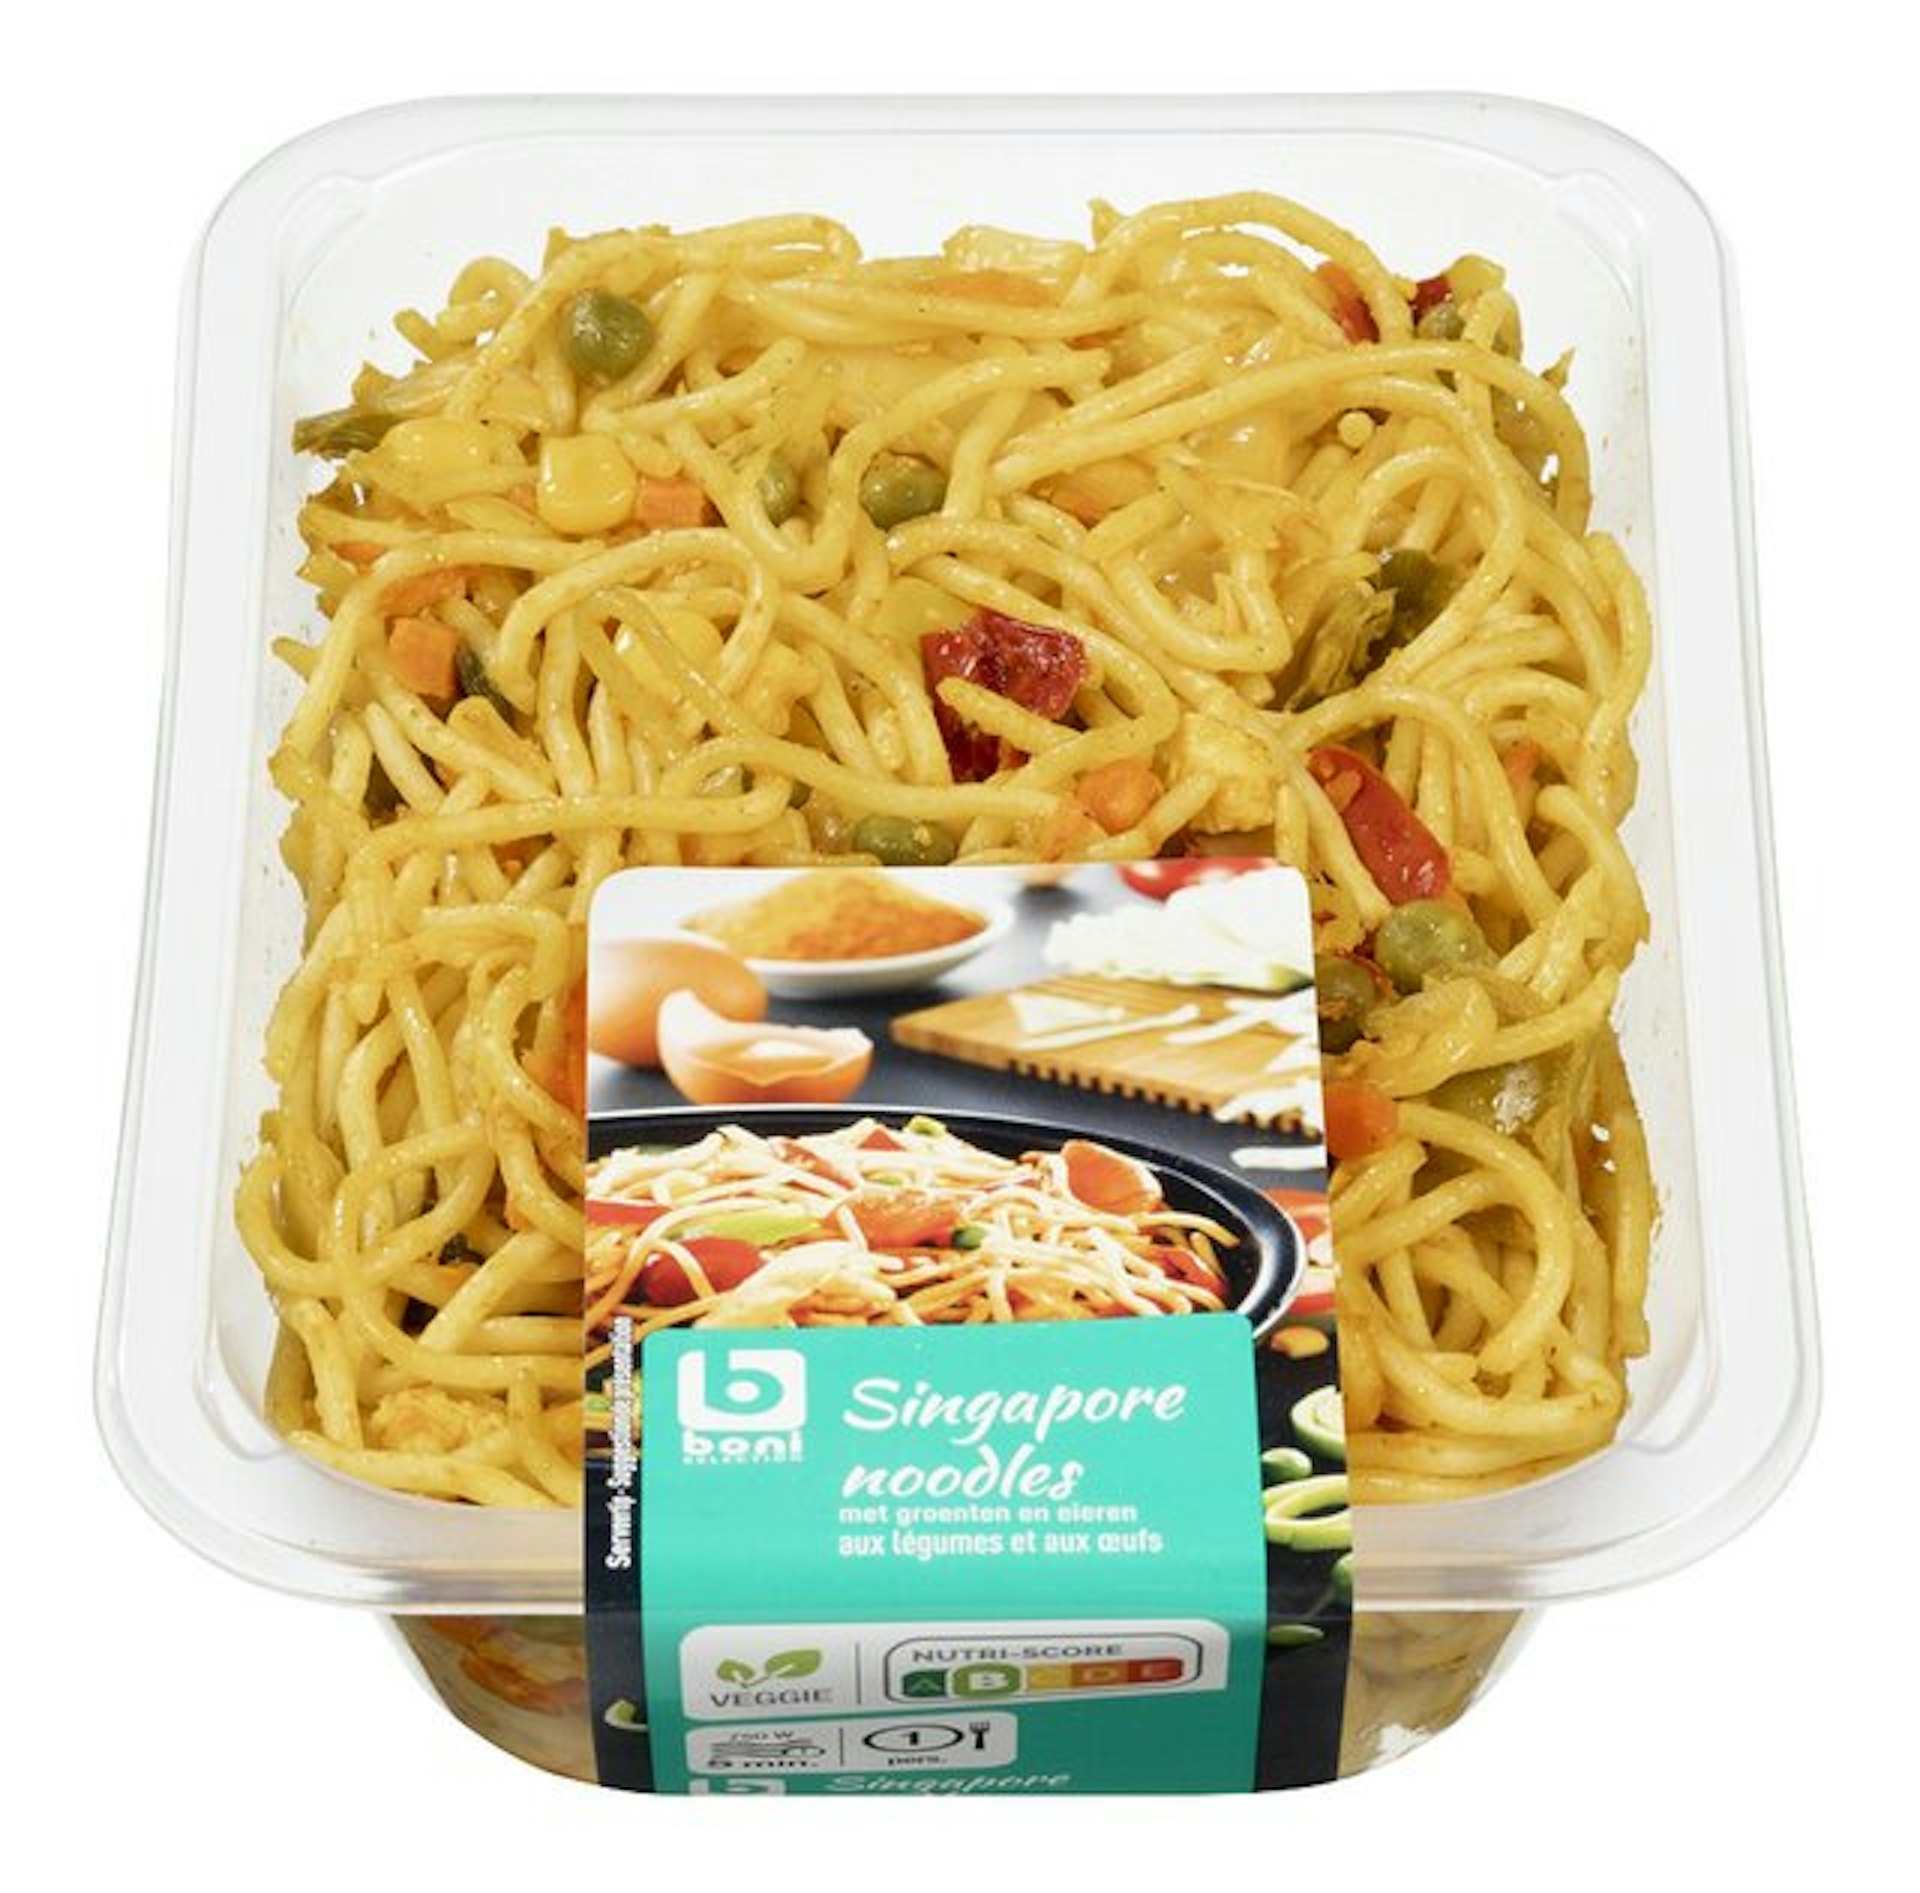 BONI Singapore noodles 450g